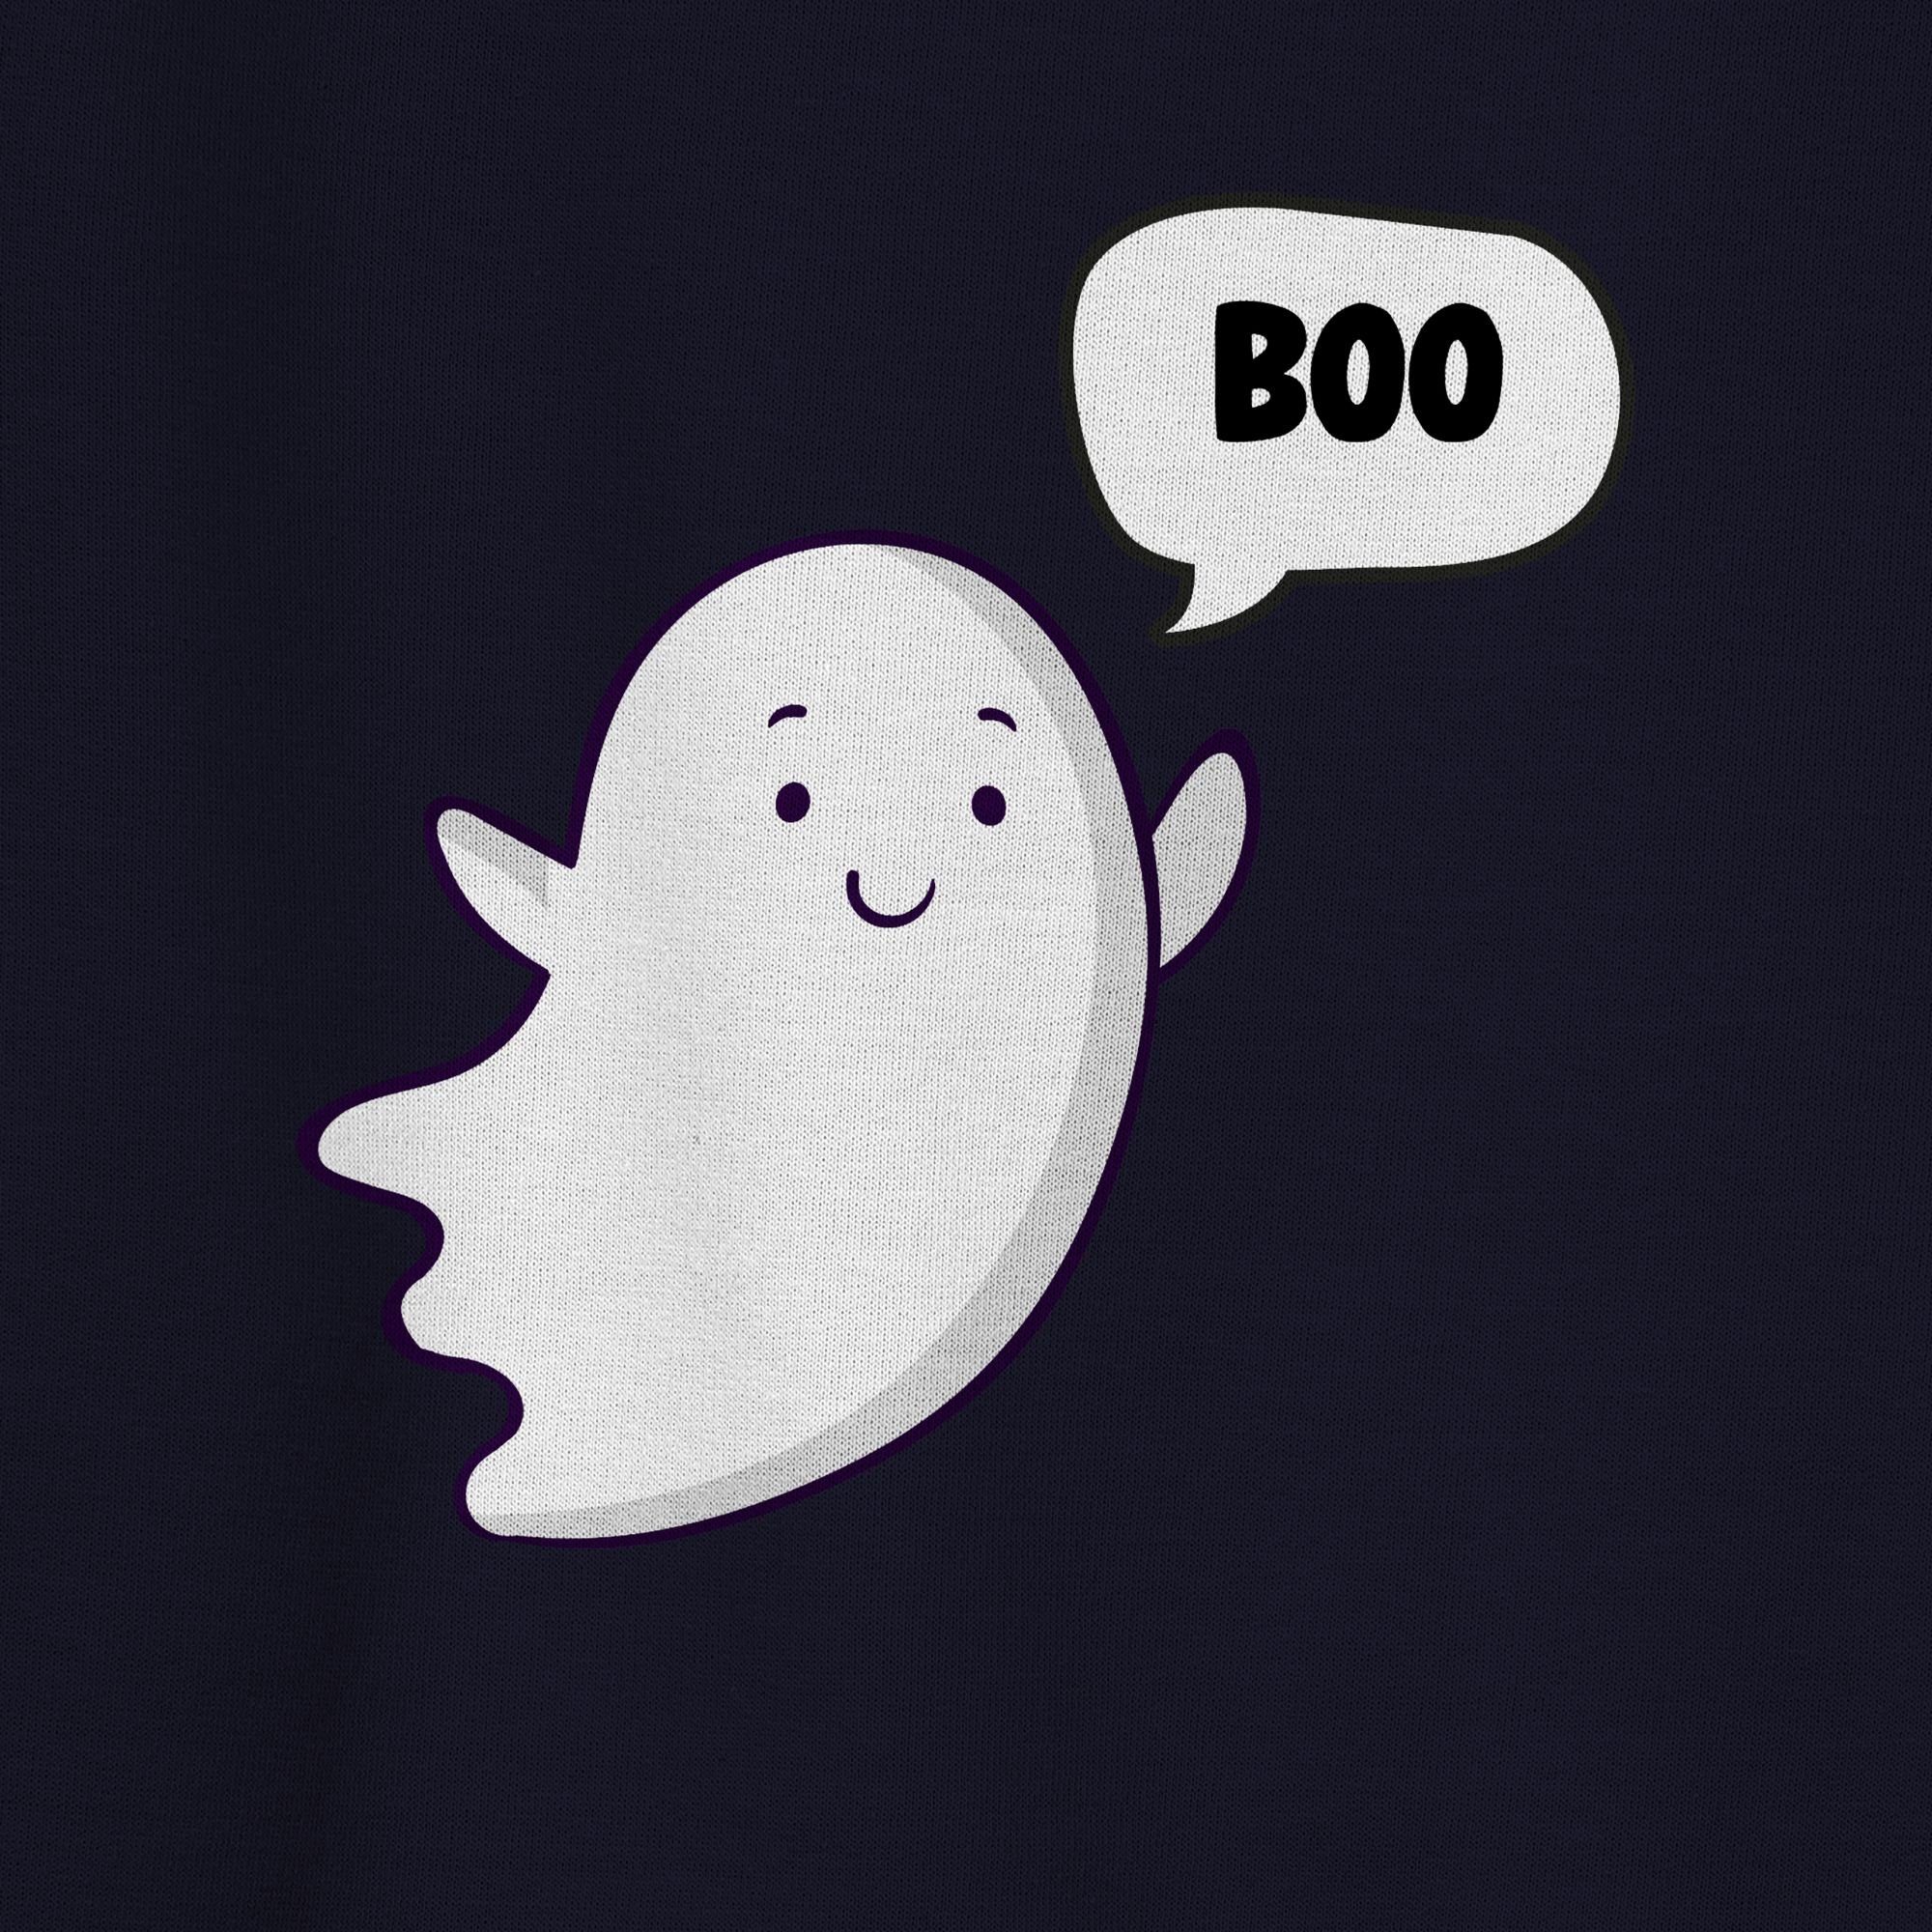 Herren (1-tlg) Sweatshirt Kostüme kleiner Dunkelblau Geister Gespenst Geist Ghost Süßer Halloween Shirtracer 3